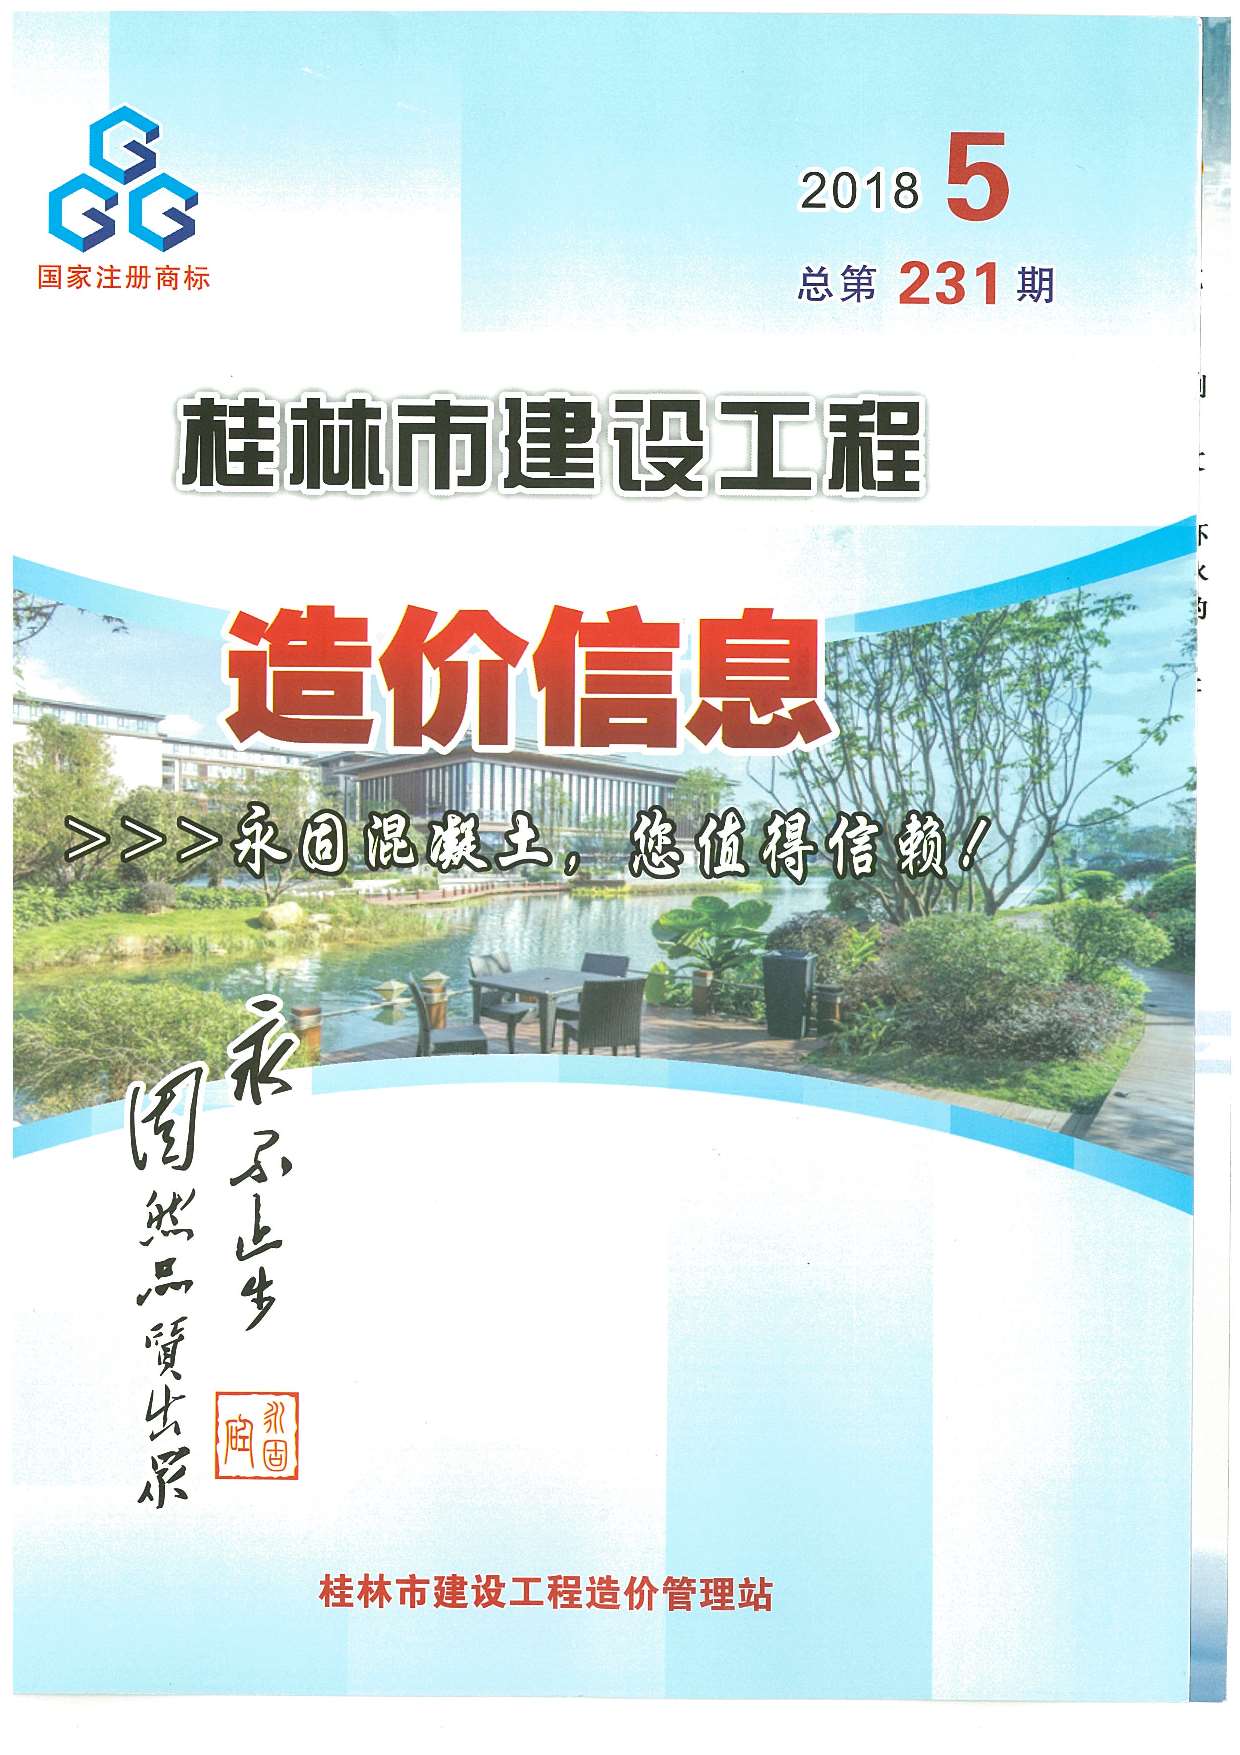 桂林市2018年5月建设工程造价信息